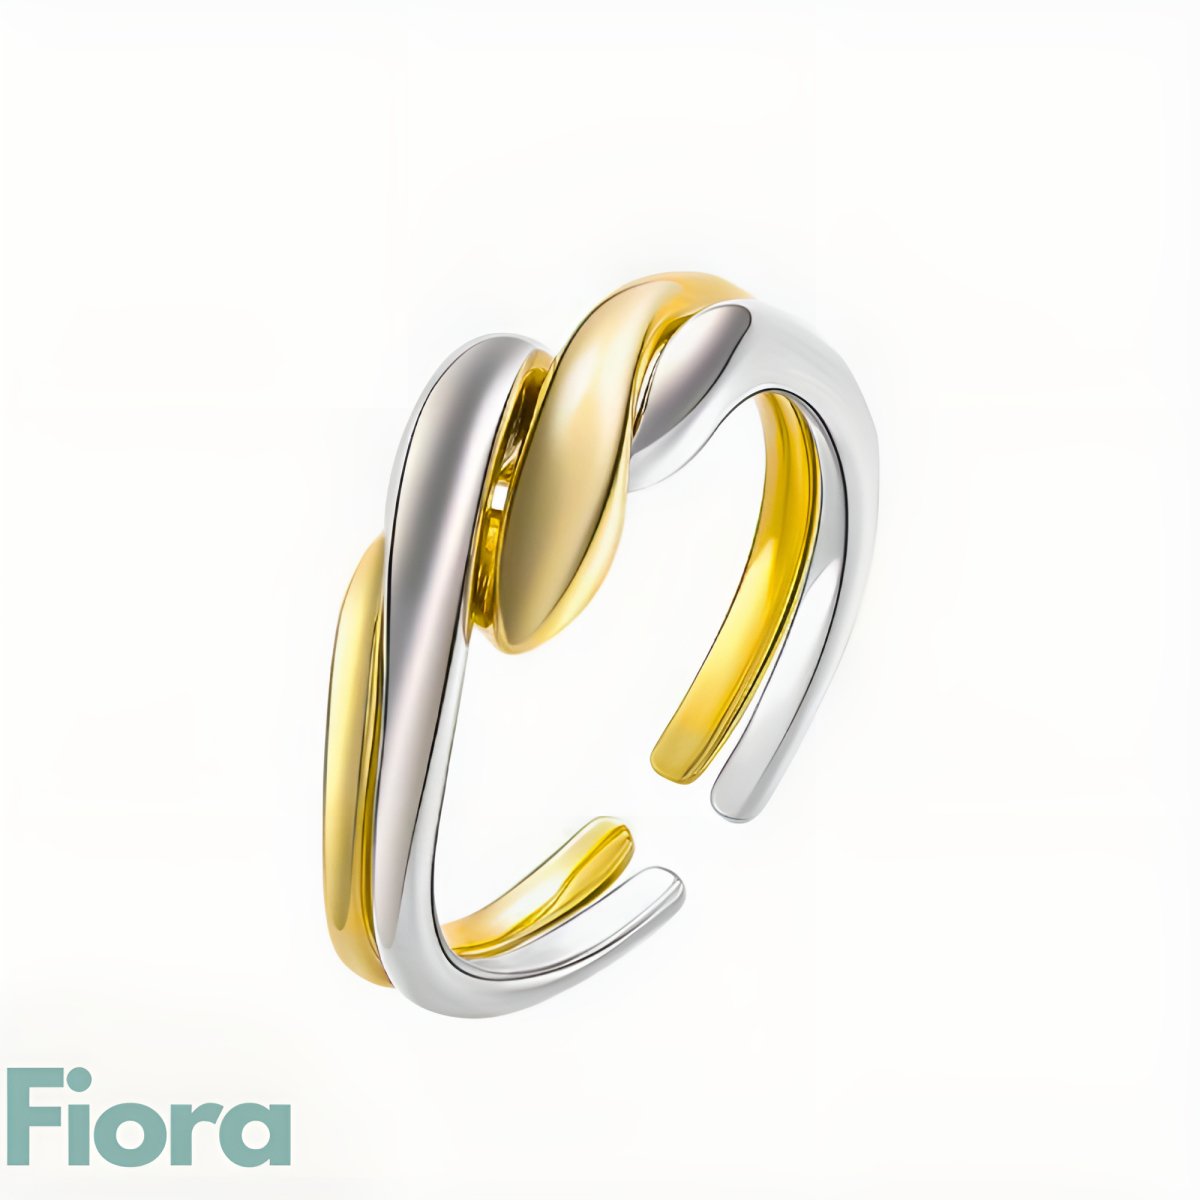 Ring Fiona - Tallsy